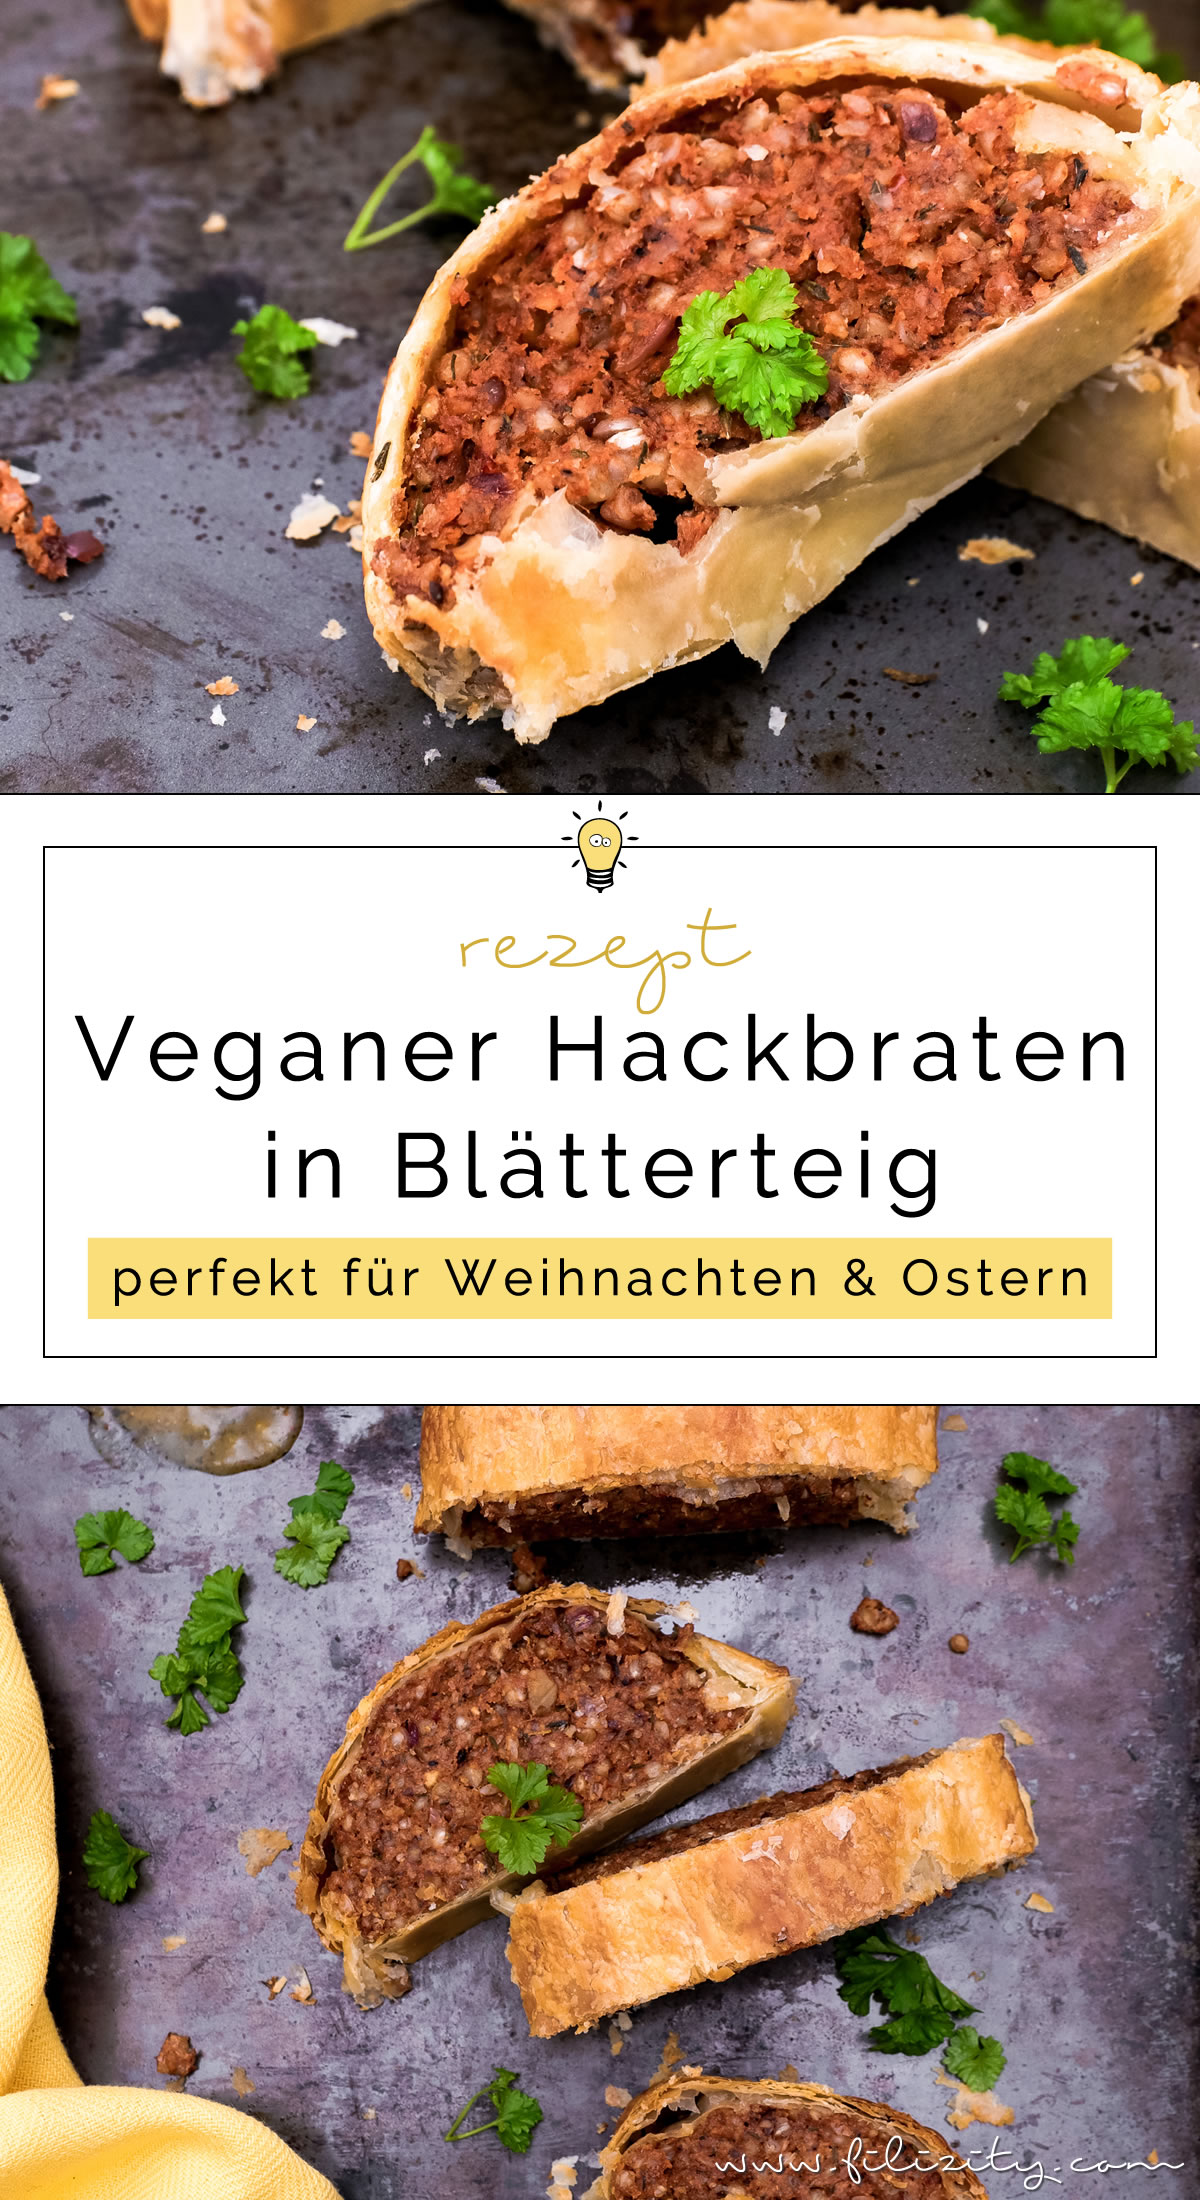 Saftiger veganer Hackbraten im Blätterteig-Mantel - Rezept ohne Fleisch-Ersatzprodukte | Filizity.com | Food-Blog aus dem Rheinland #vegan #veggie #weihnachten #ostern